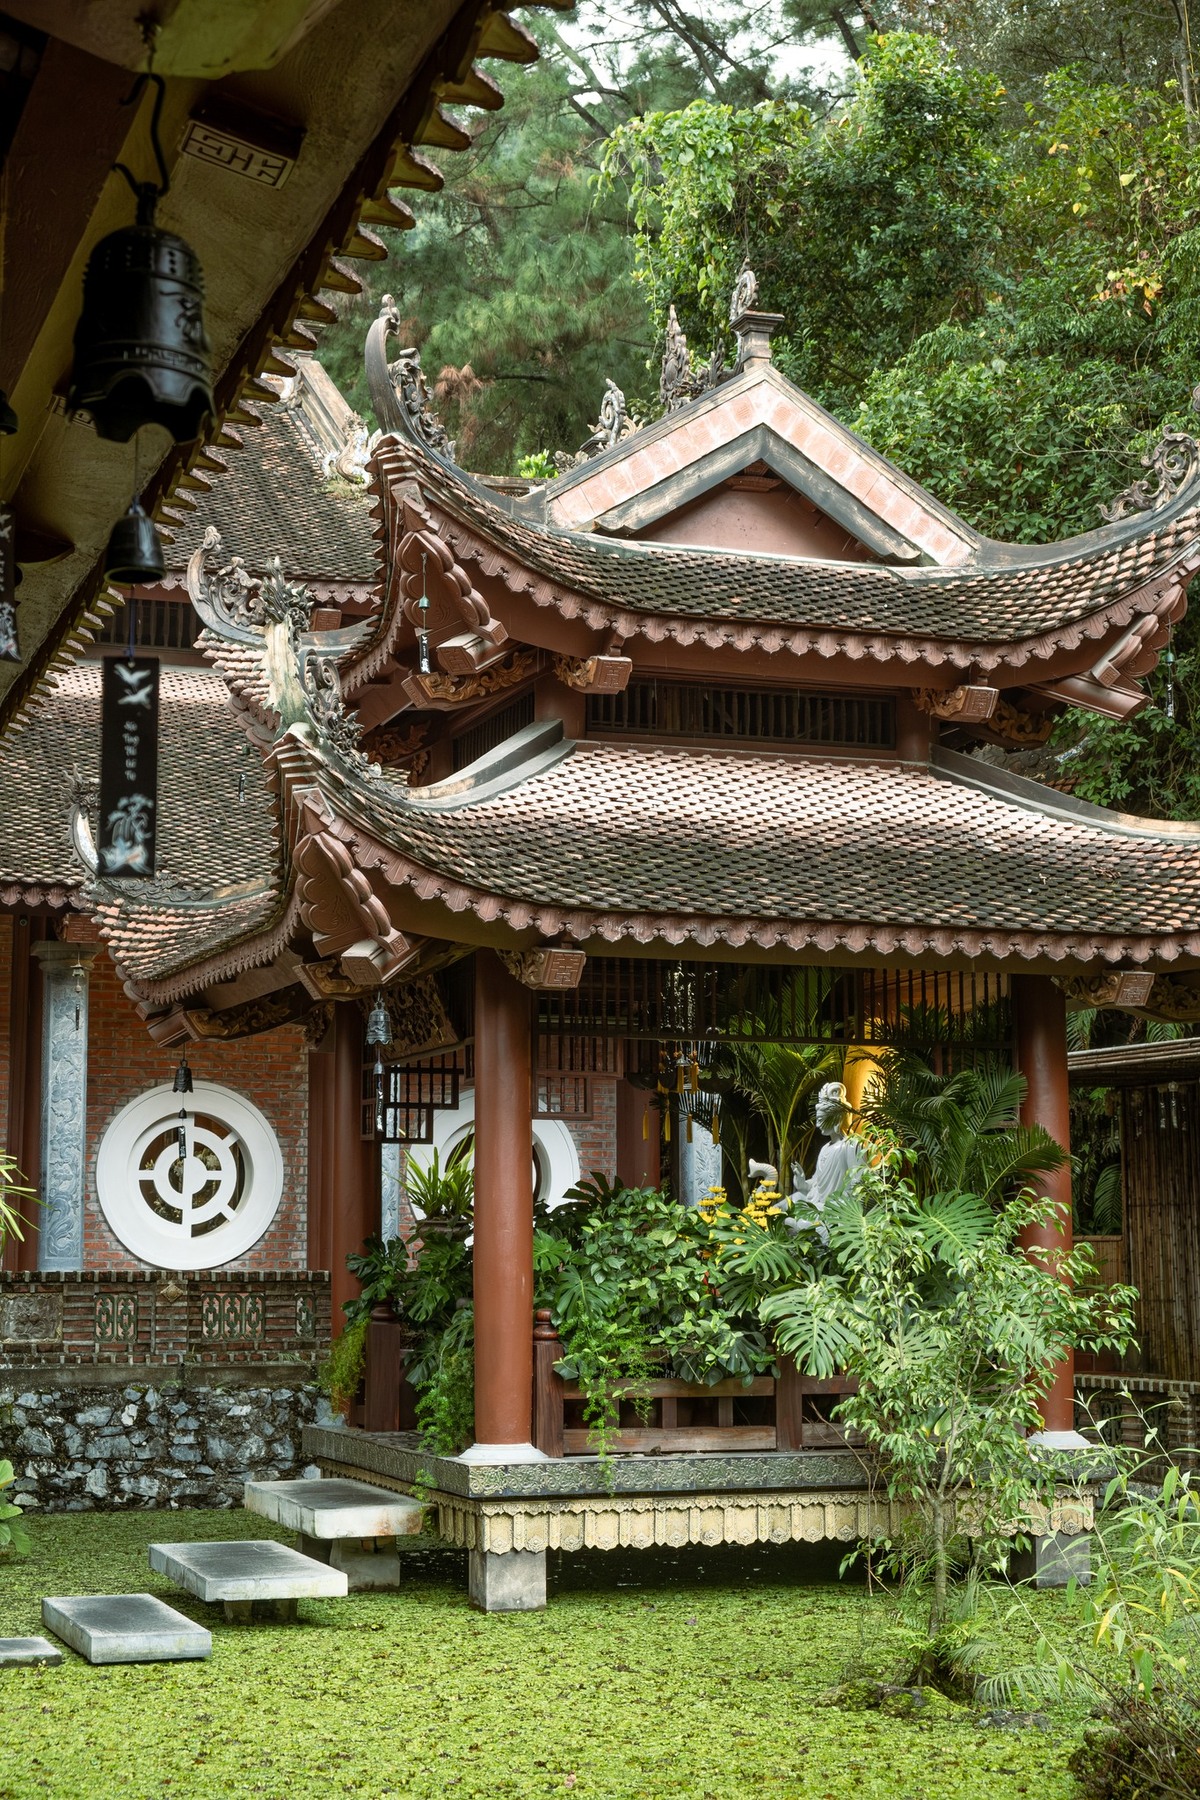 Khoảng 200 - 300 năm trước, ngôi chùa bị lãng quên, không có sư trụ trì, kiến trúc của ngôi chùa cũng có phần bị hao mòn, cây cối mọc rậm rạp ở xung quanh. Tới tháng 12 năm 2015, đại đức Thích Minh Quang đã tới chùa và bắt đầu tiếp nhận, tu sửa lại kiến trúc của ngôi chùa. Kể từ đây chùa Đùng cũng đã được đổi tên thành Địa Tạng Phi Lai Tự.